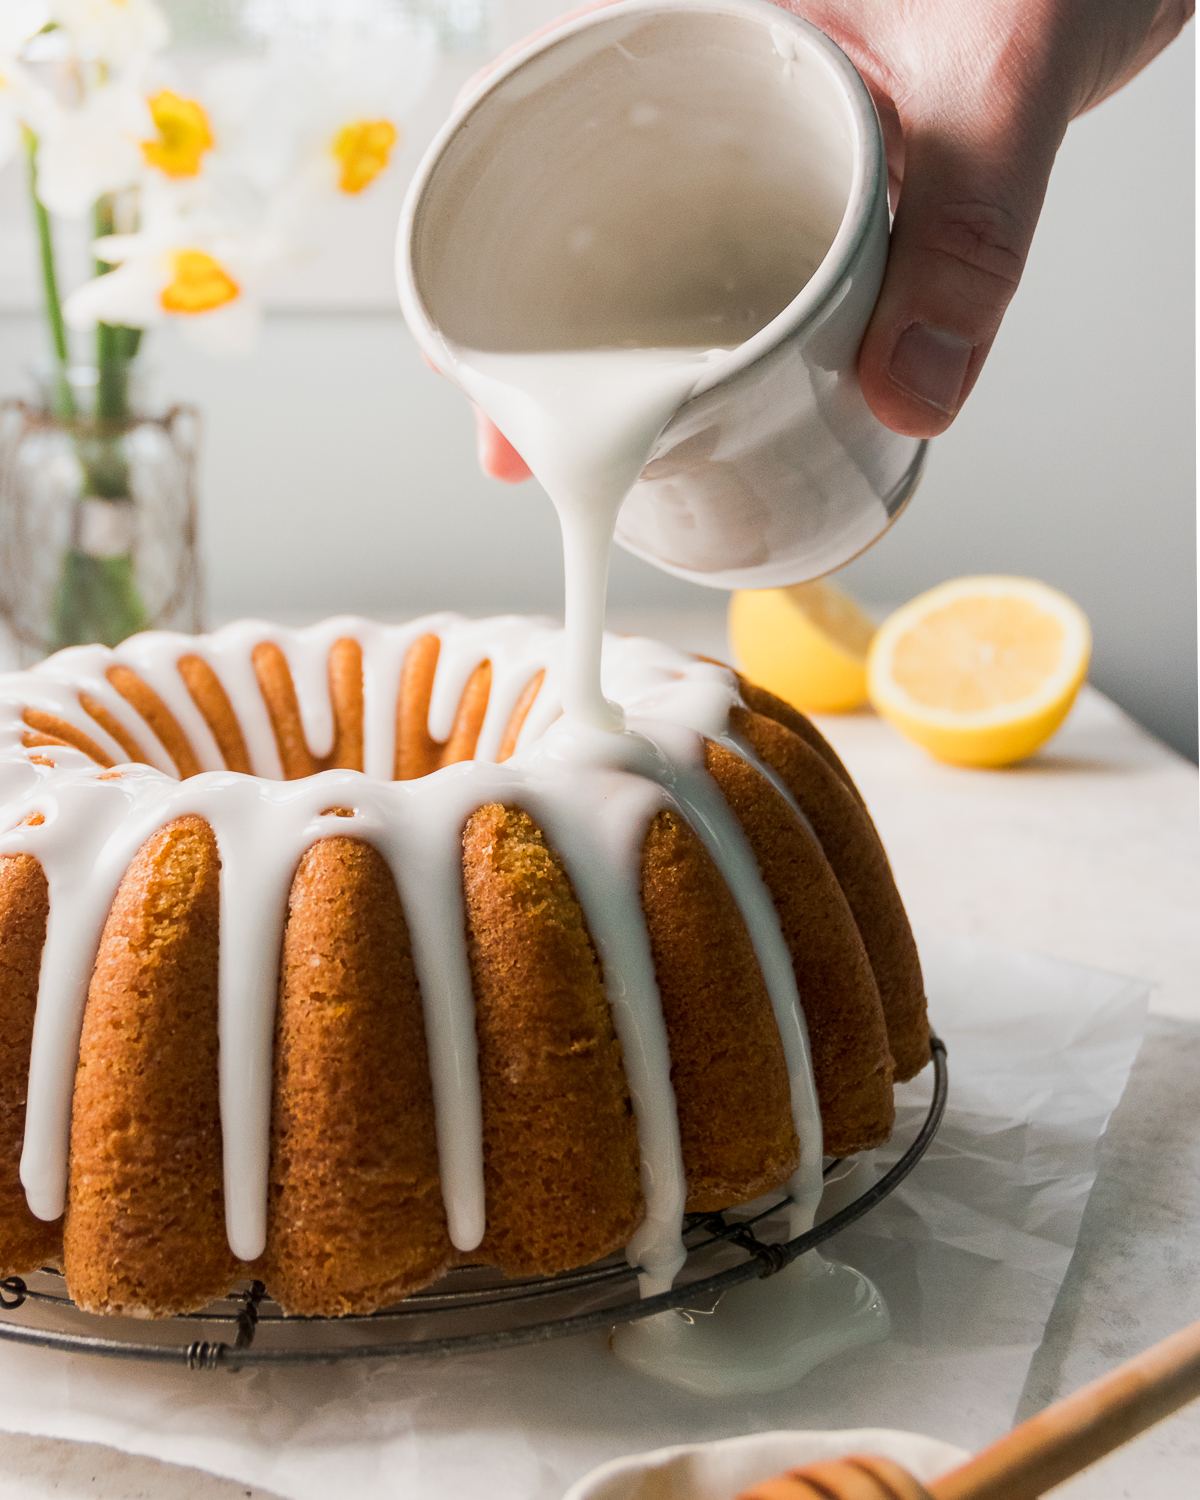 Glaze being poured over lemon bundt cake.